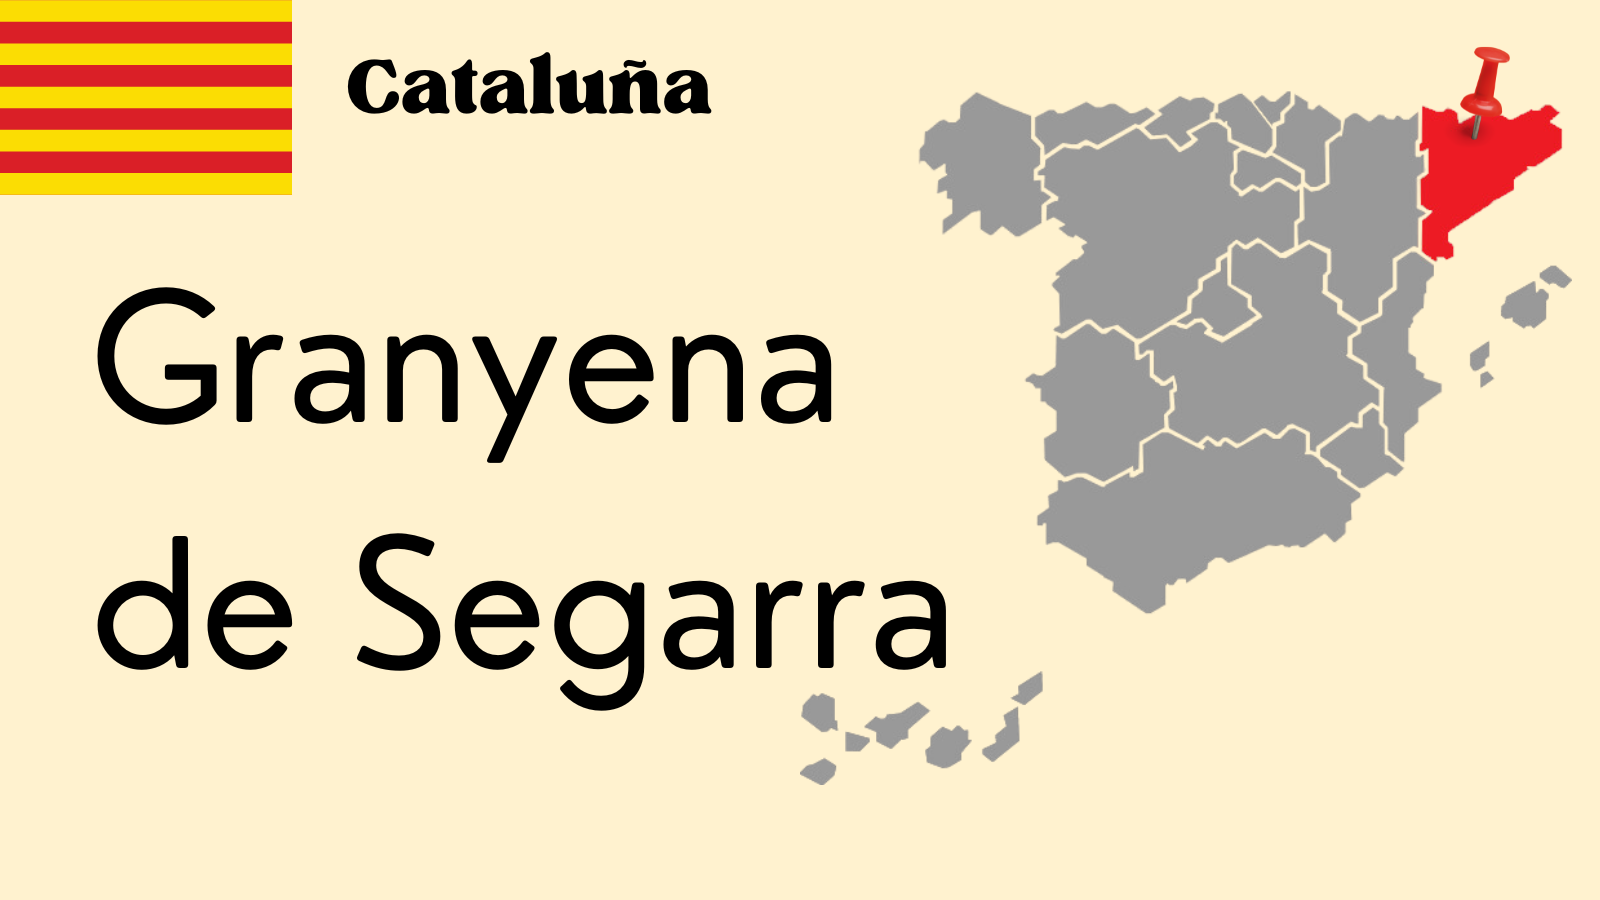 Granyena de Segarra